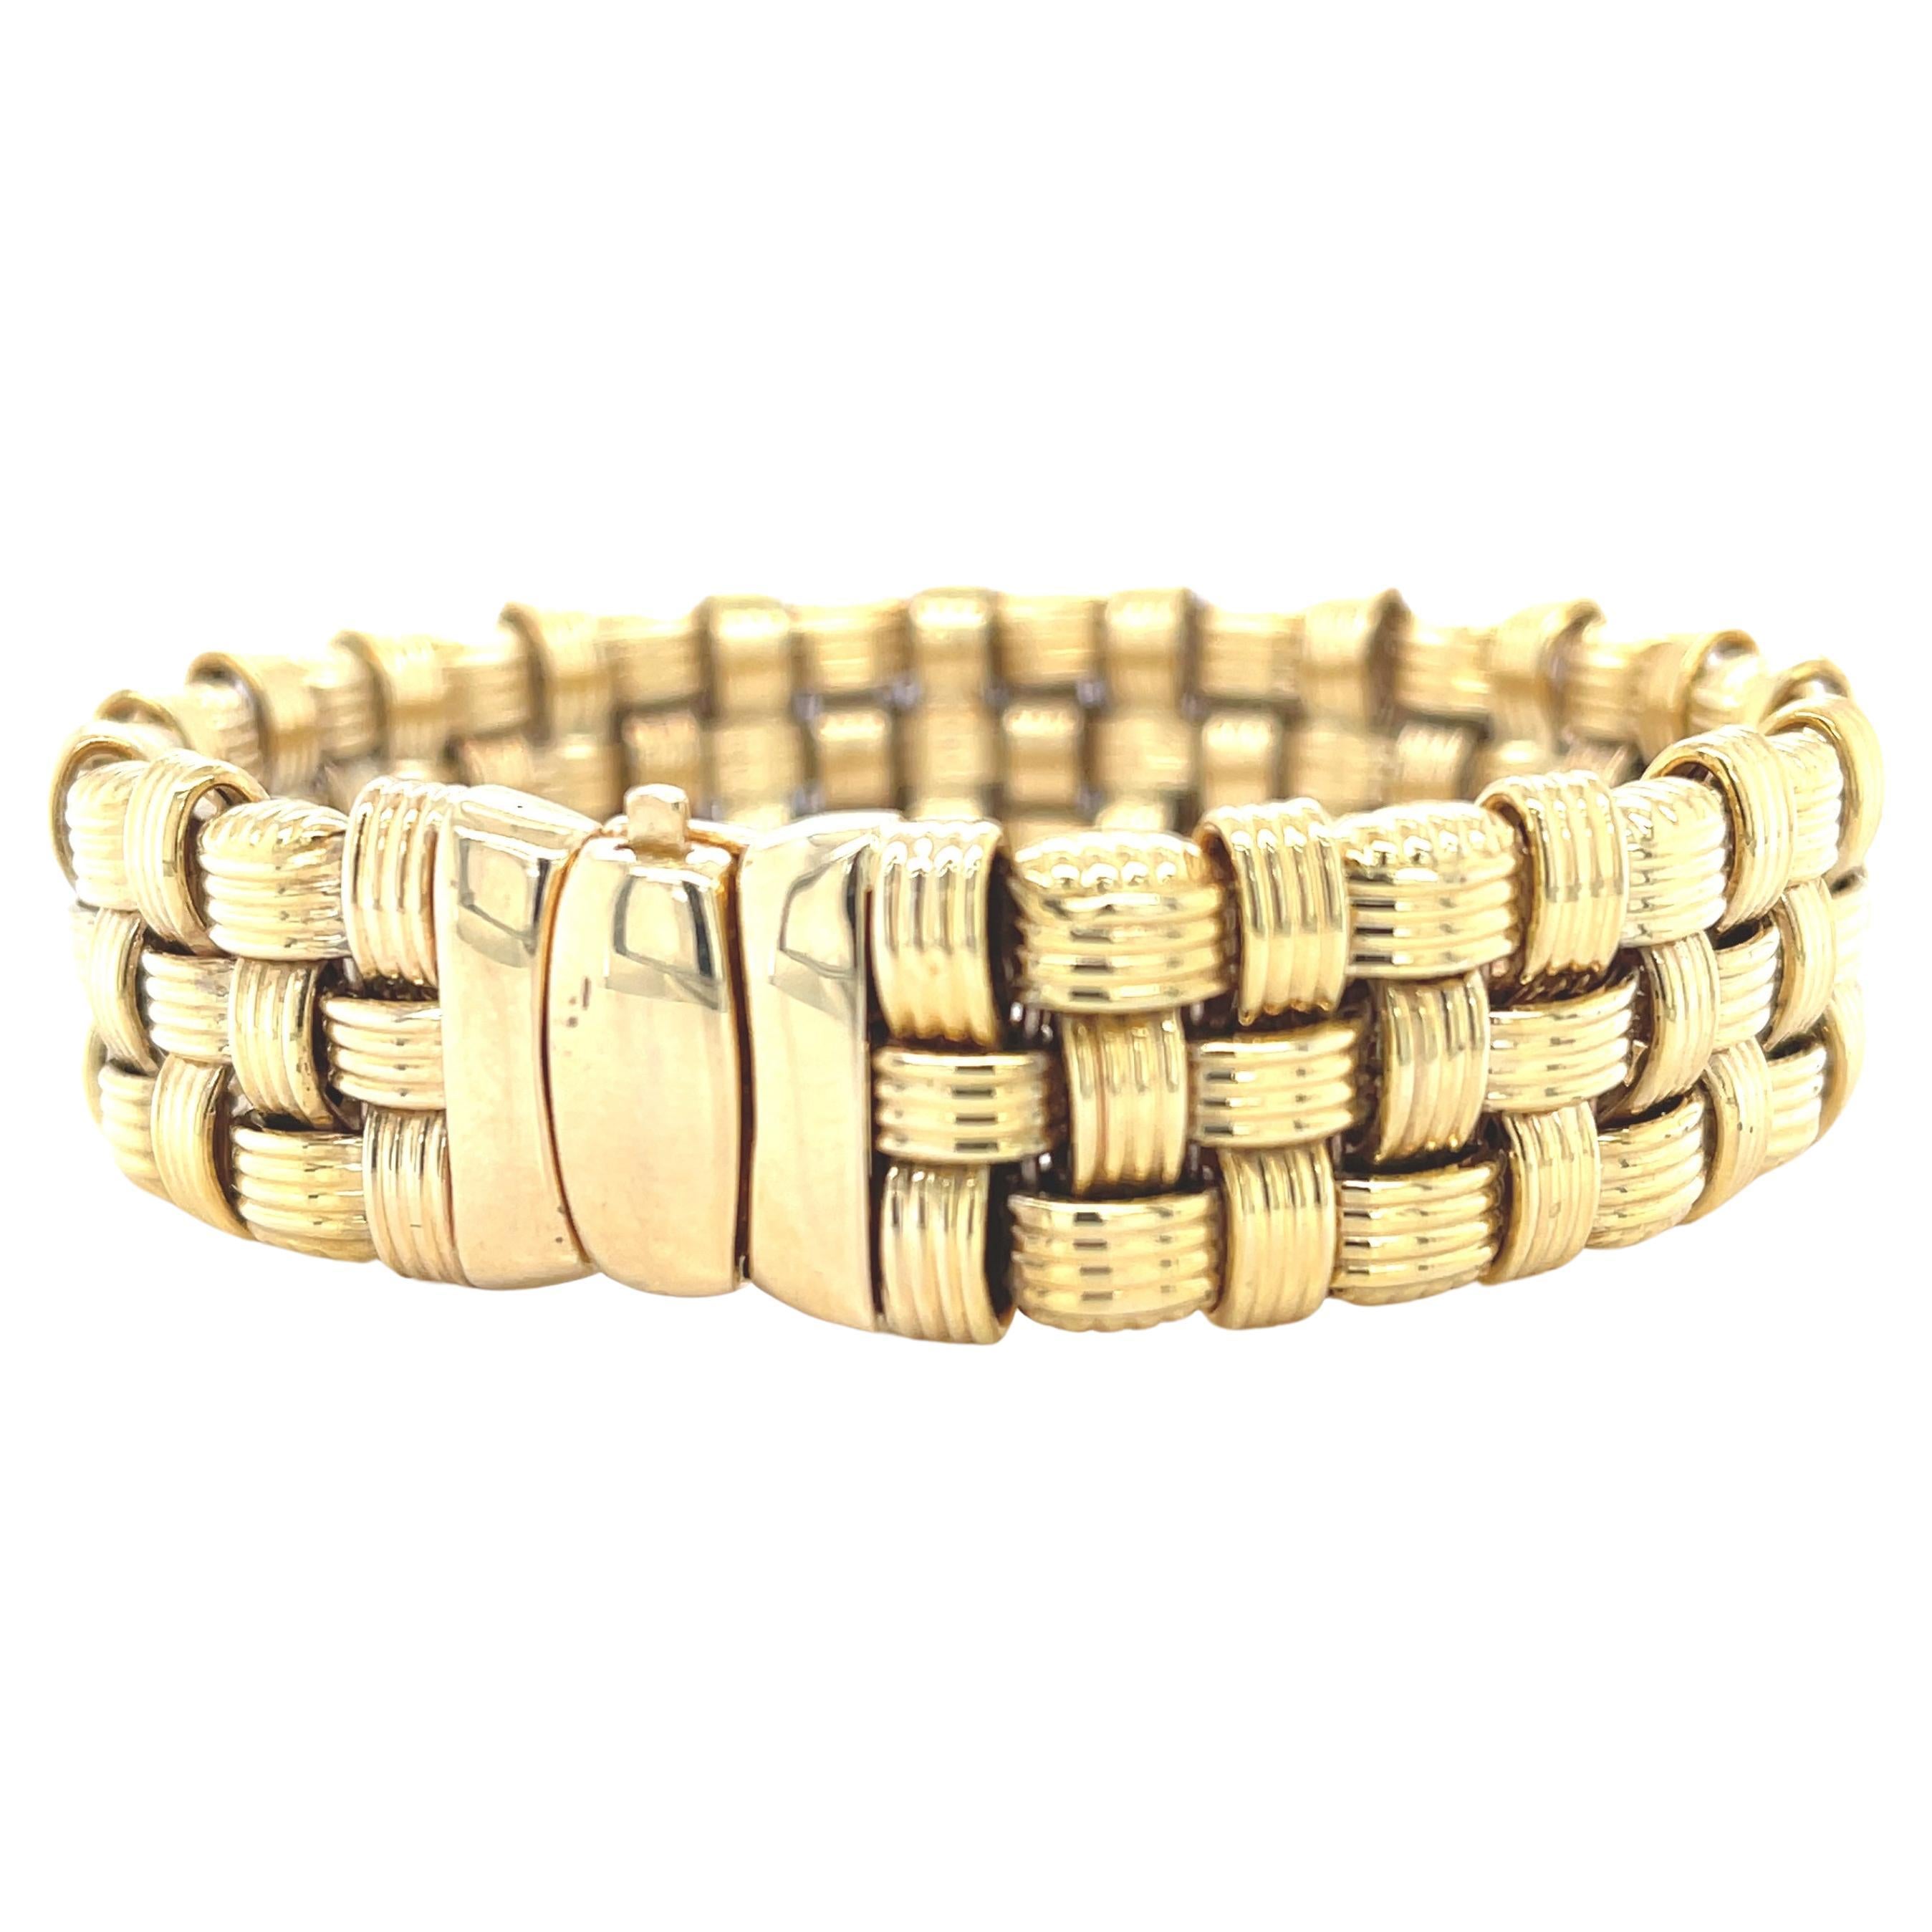  Italian Basketweave Bracelet in 14k Yellow Gold For Sale